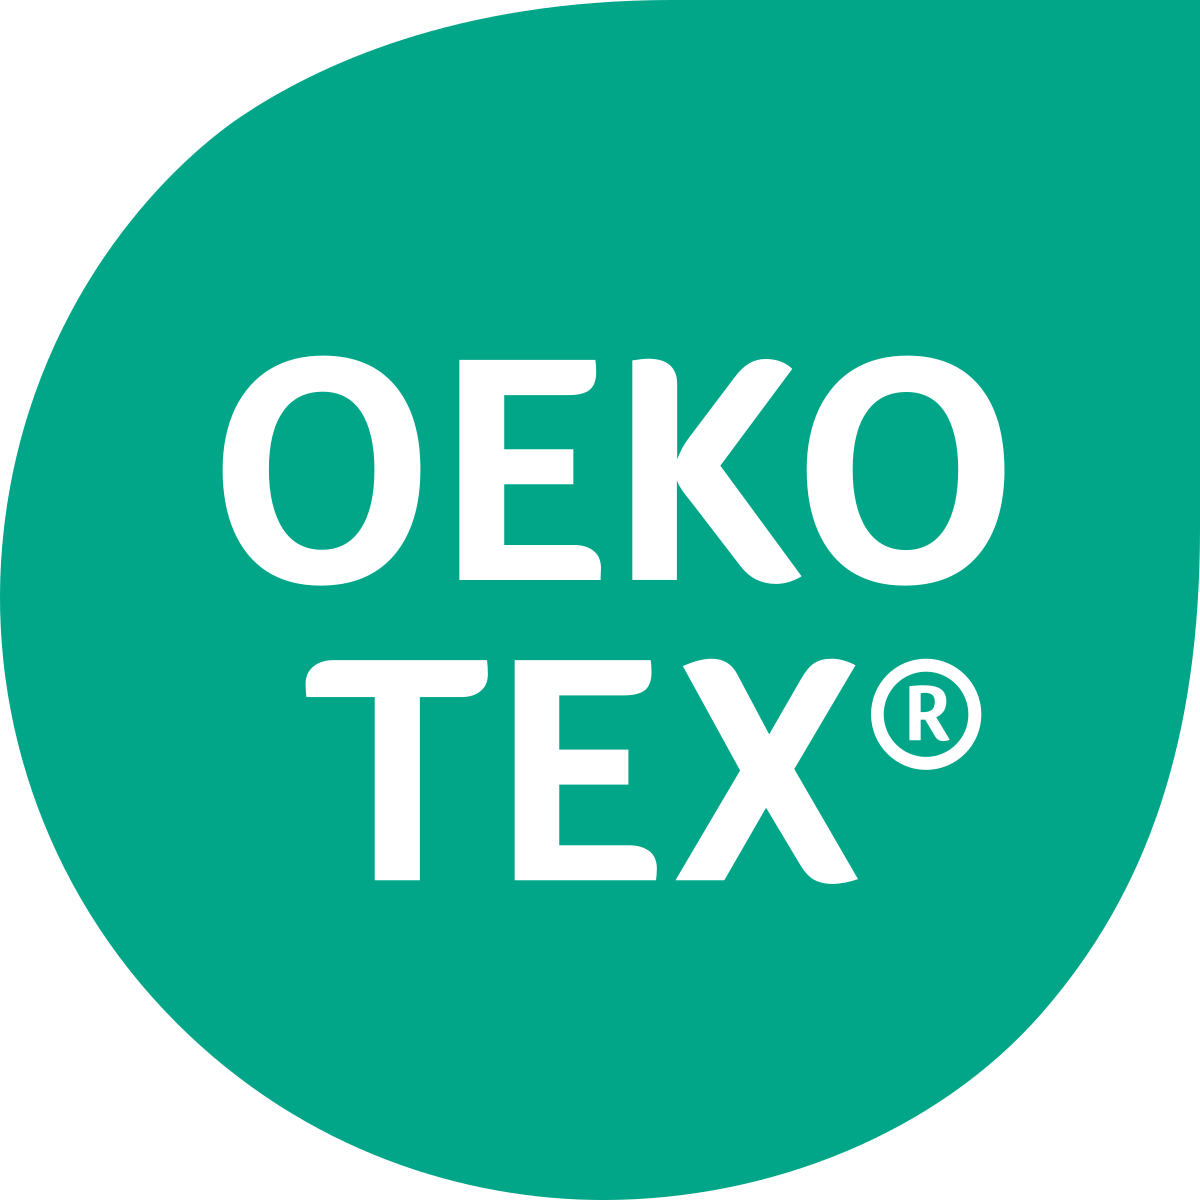 OEKO-TEX Certification